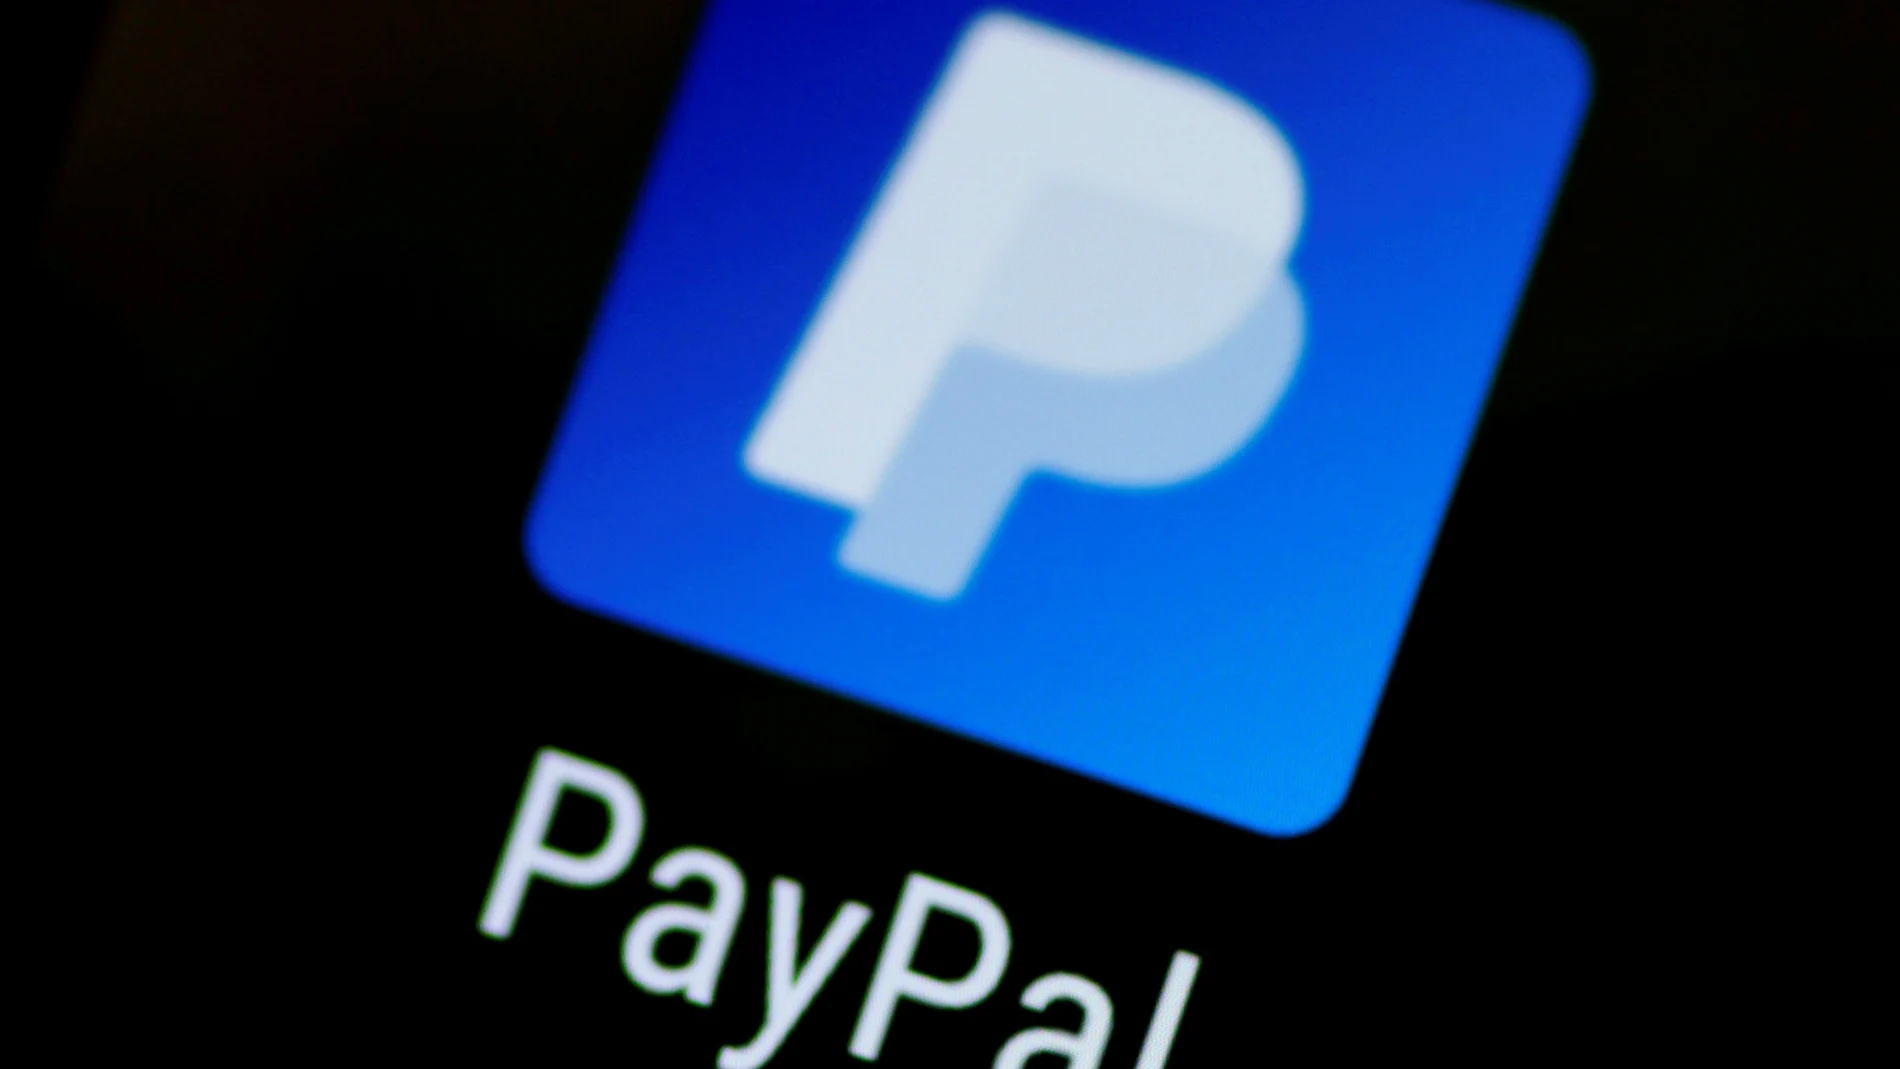 Cómo recibir y enviar dinero en Paypal